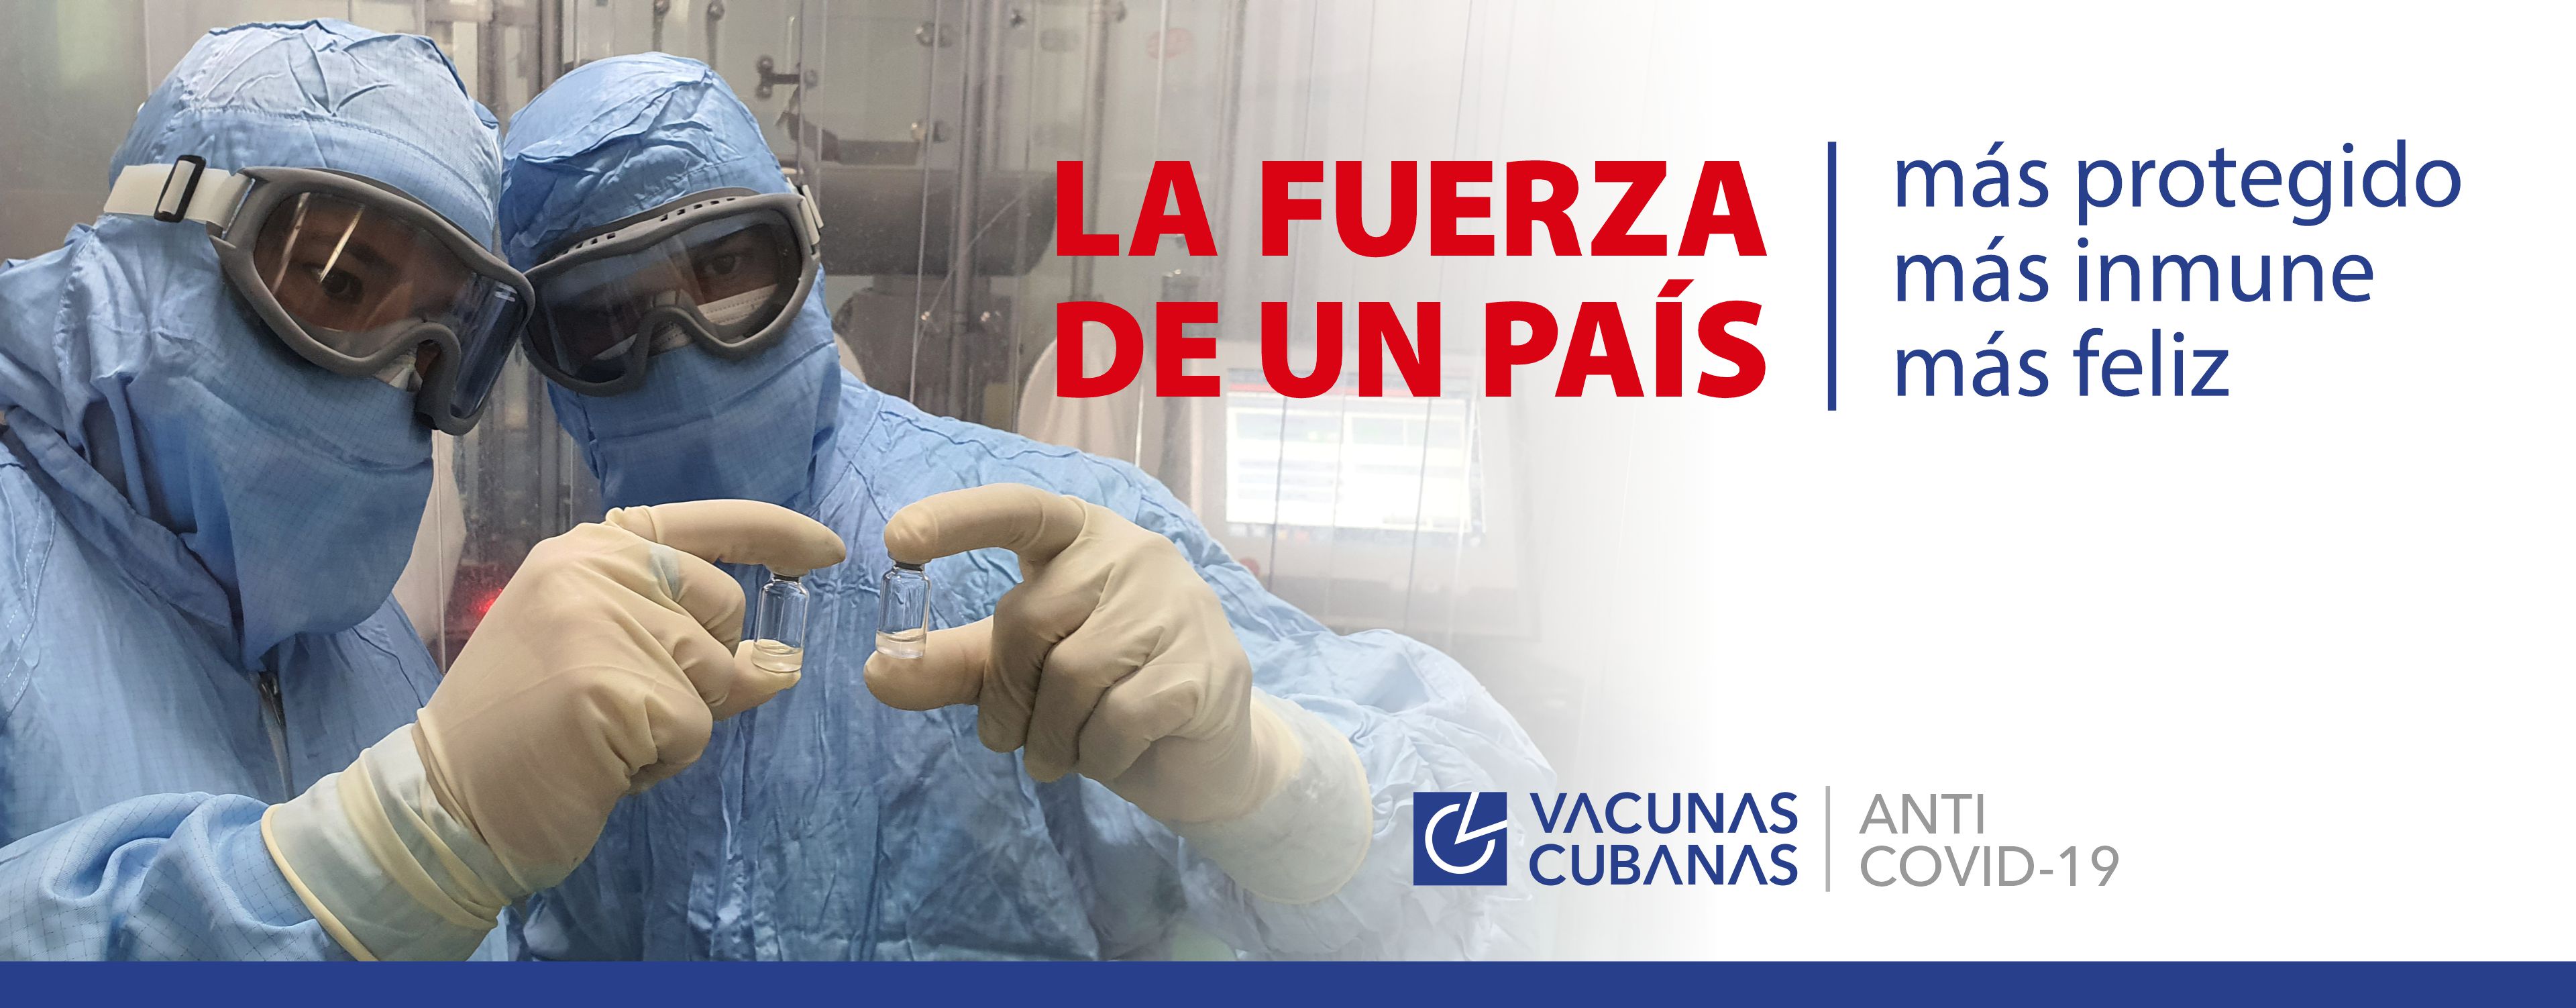 Soberana 02, una de las vacunas cubanas contra covid-19 que entrará a la fase III de ensayos clínicos, realizará sus pruebas finales en humanos. Hasta el momento ha demostrado alta tolerancia y seguridad en su aplicación.